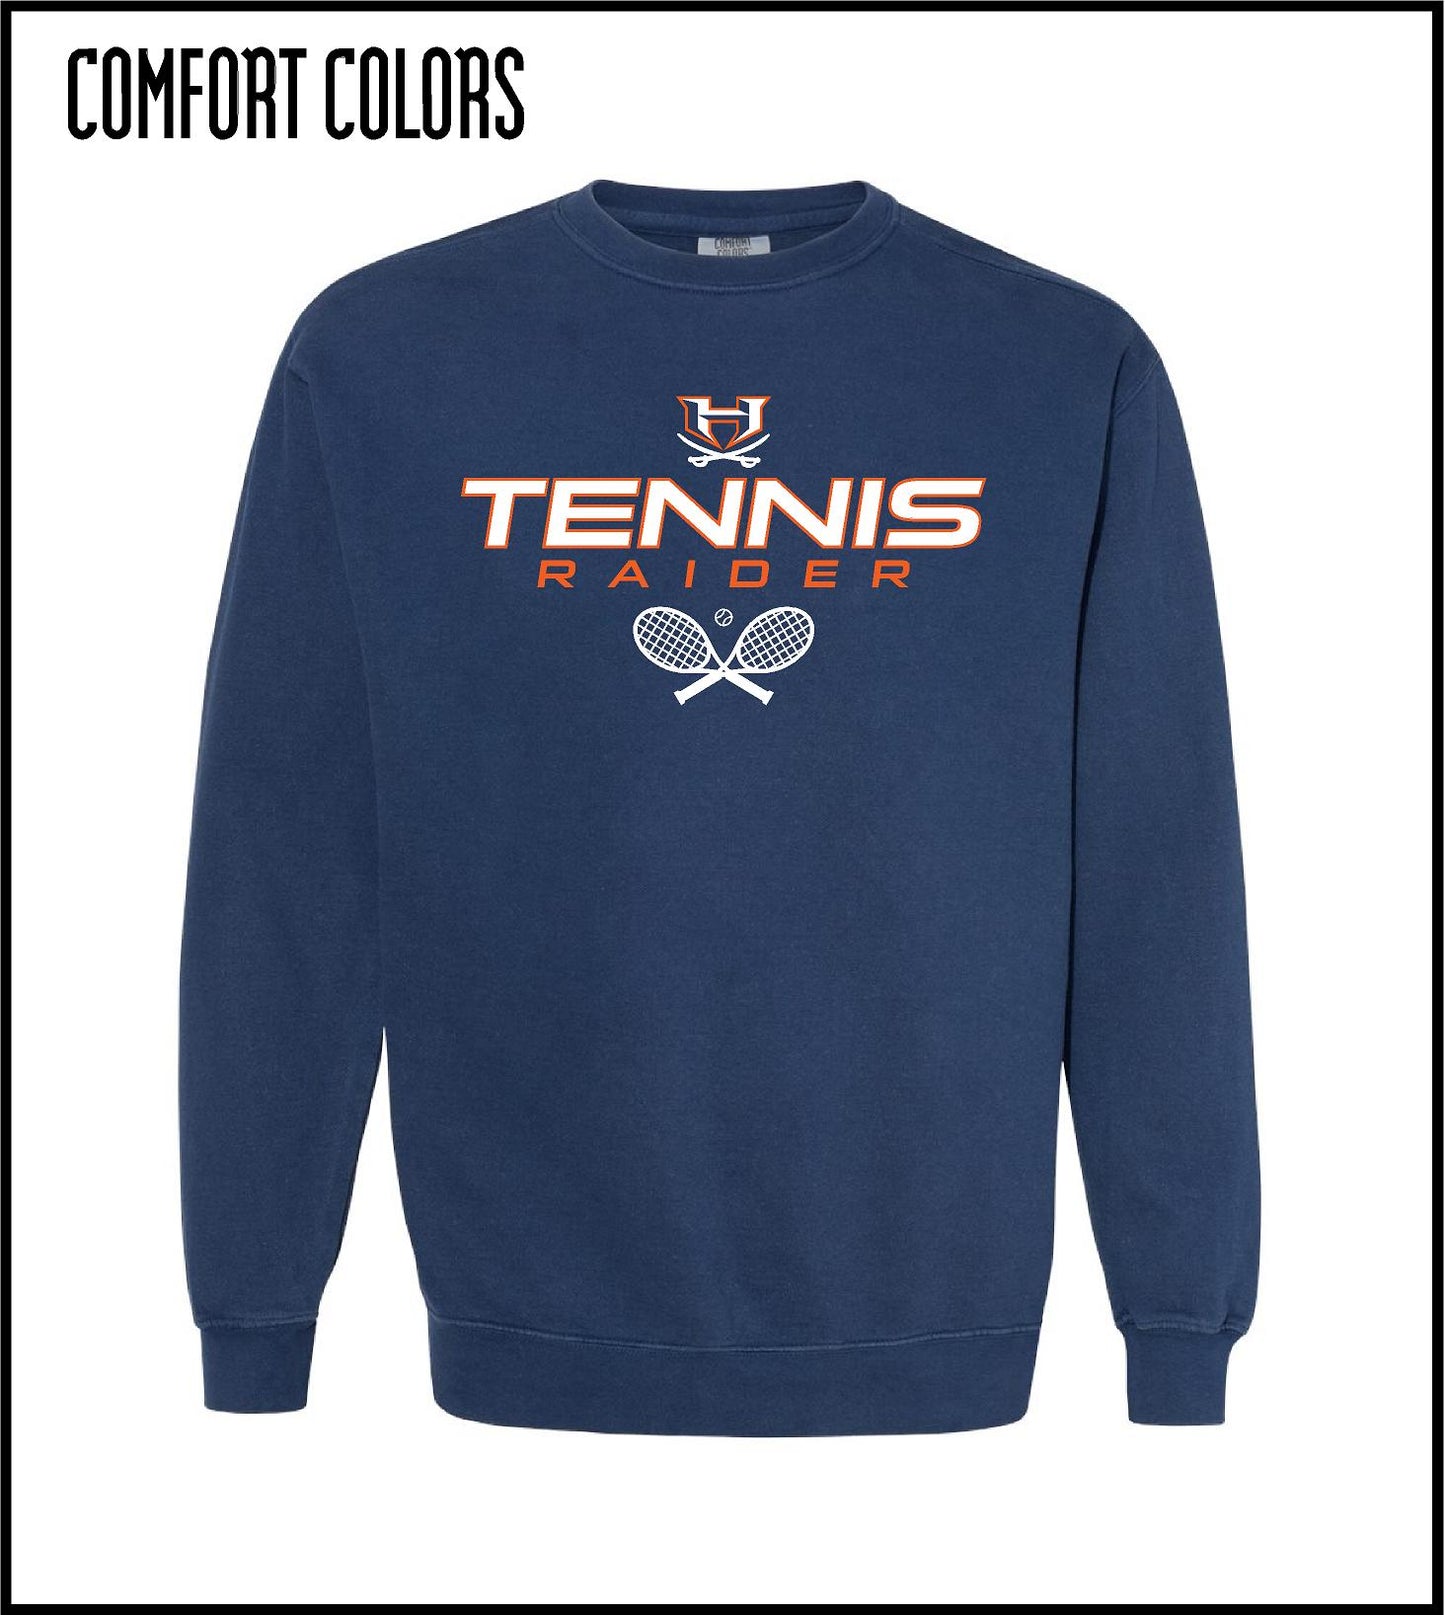 Comfort Colors Sweatshirt